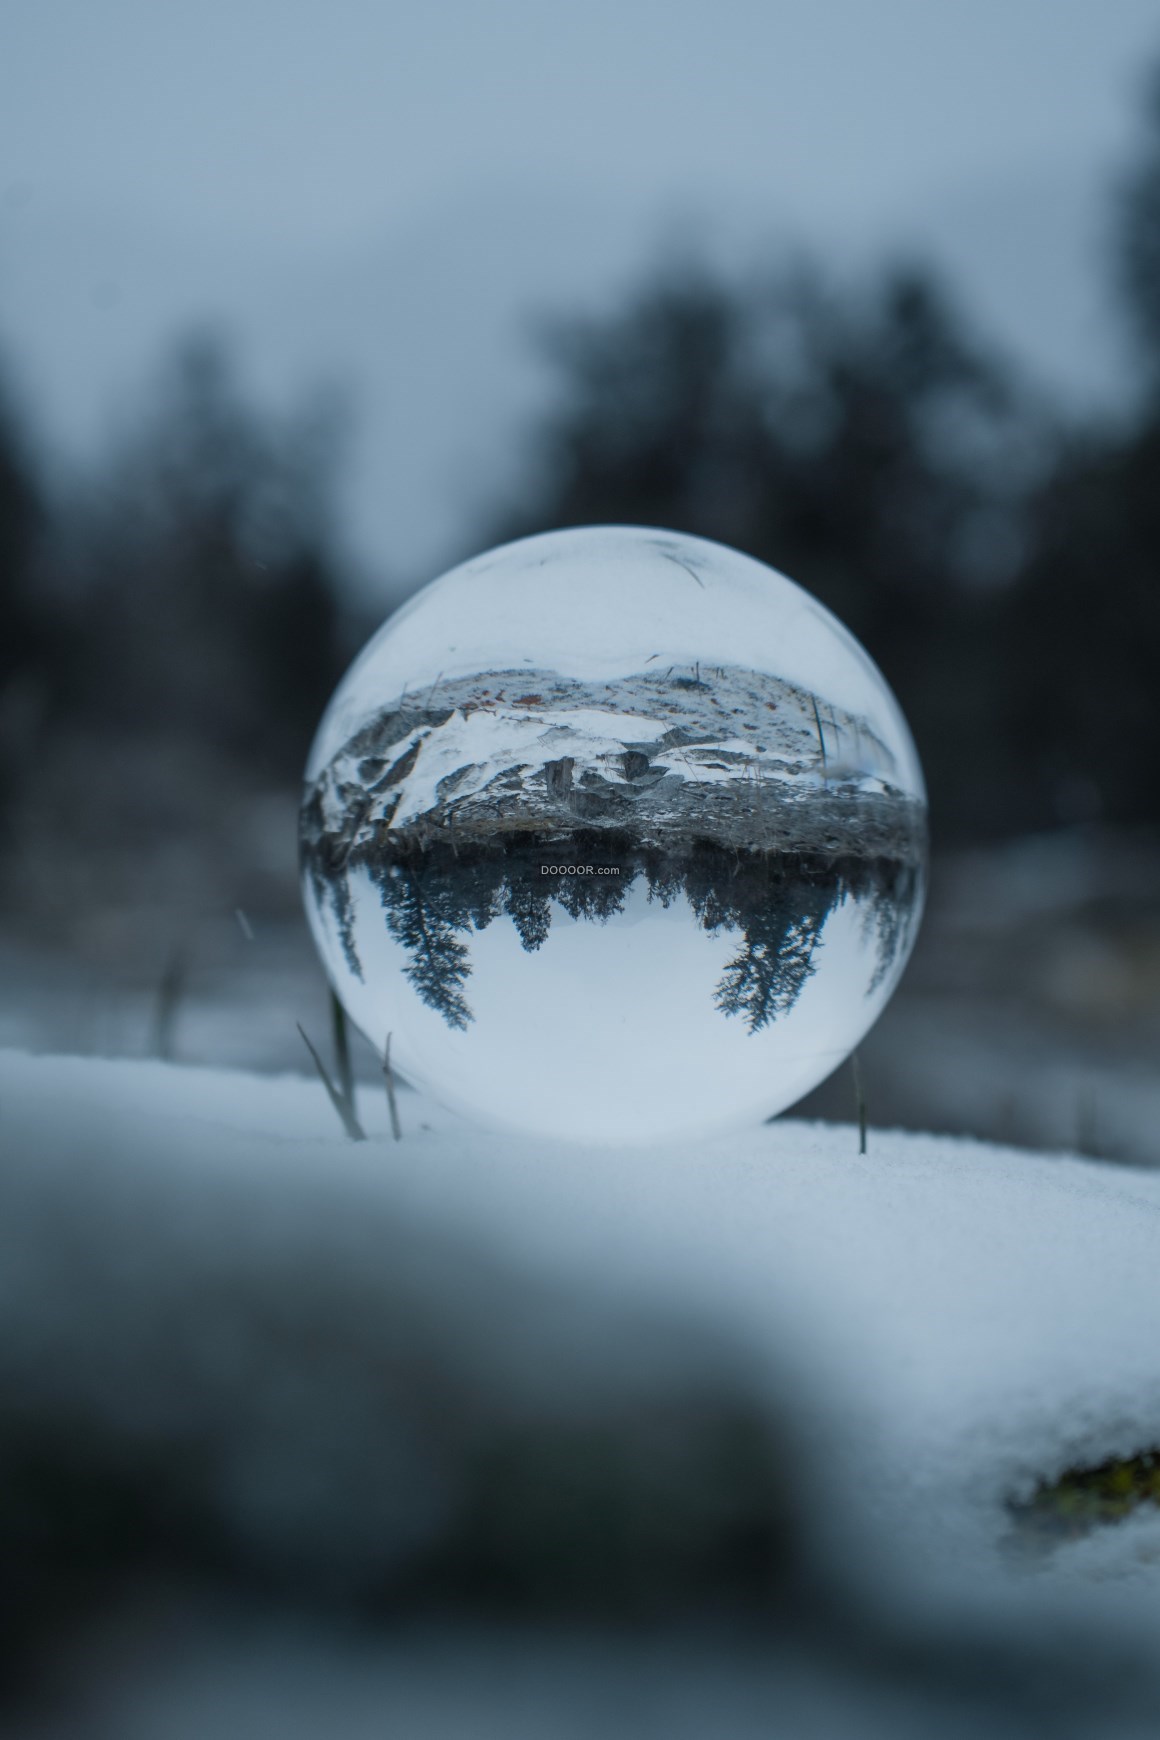 深冬时节白雪皑皑透过一个透明的玻璃水晶球倒映出远处的景色自然风景